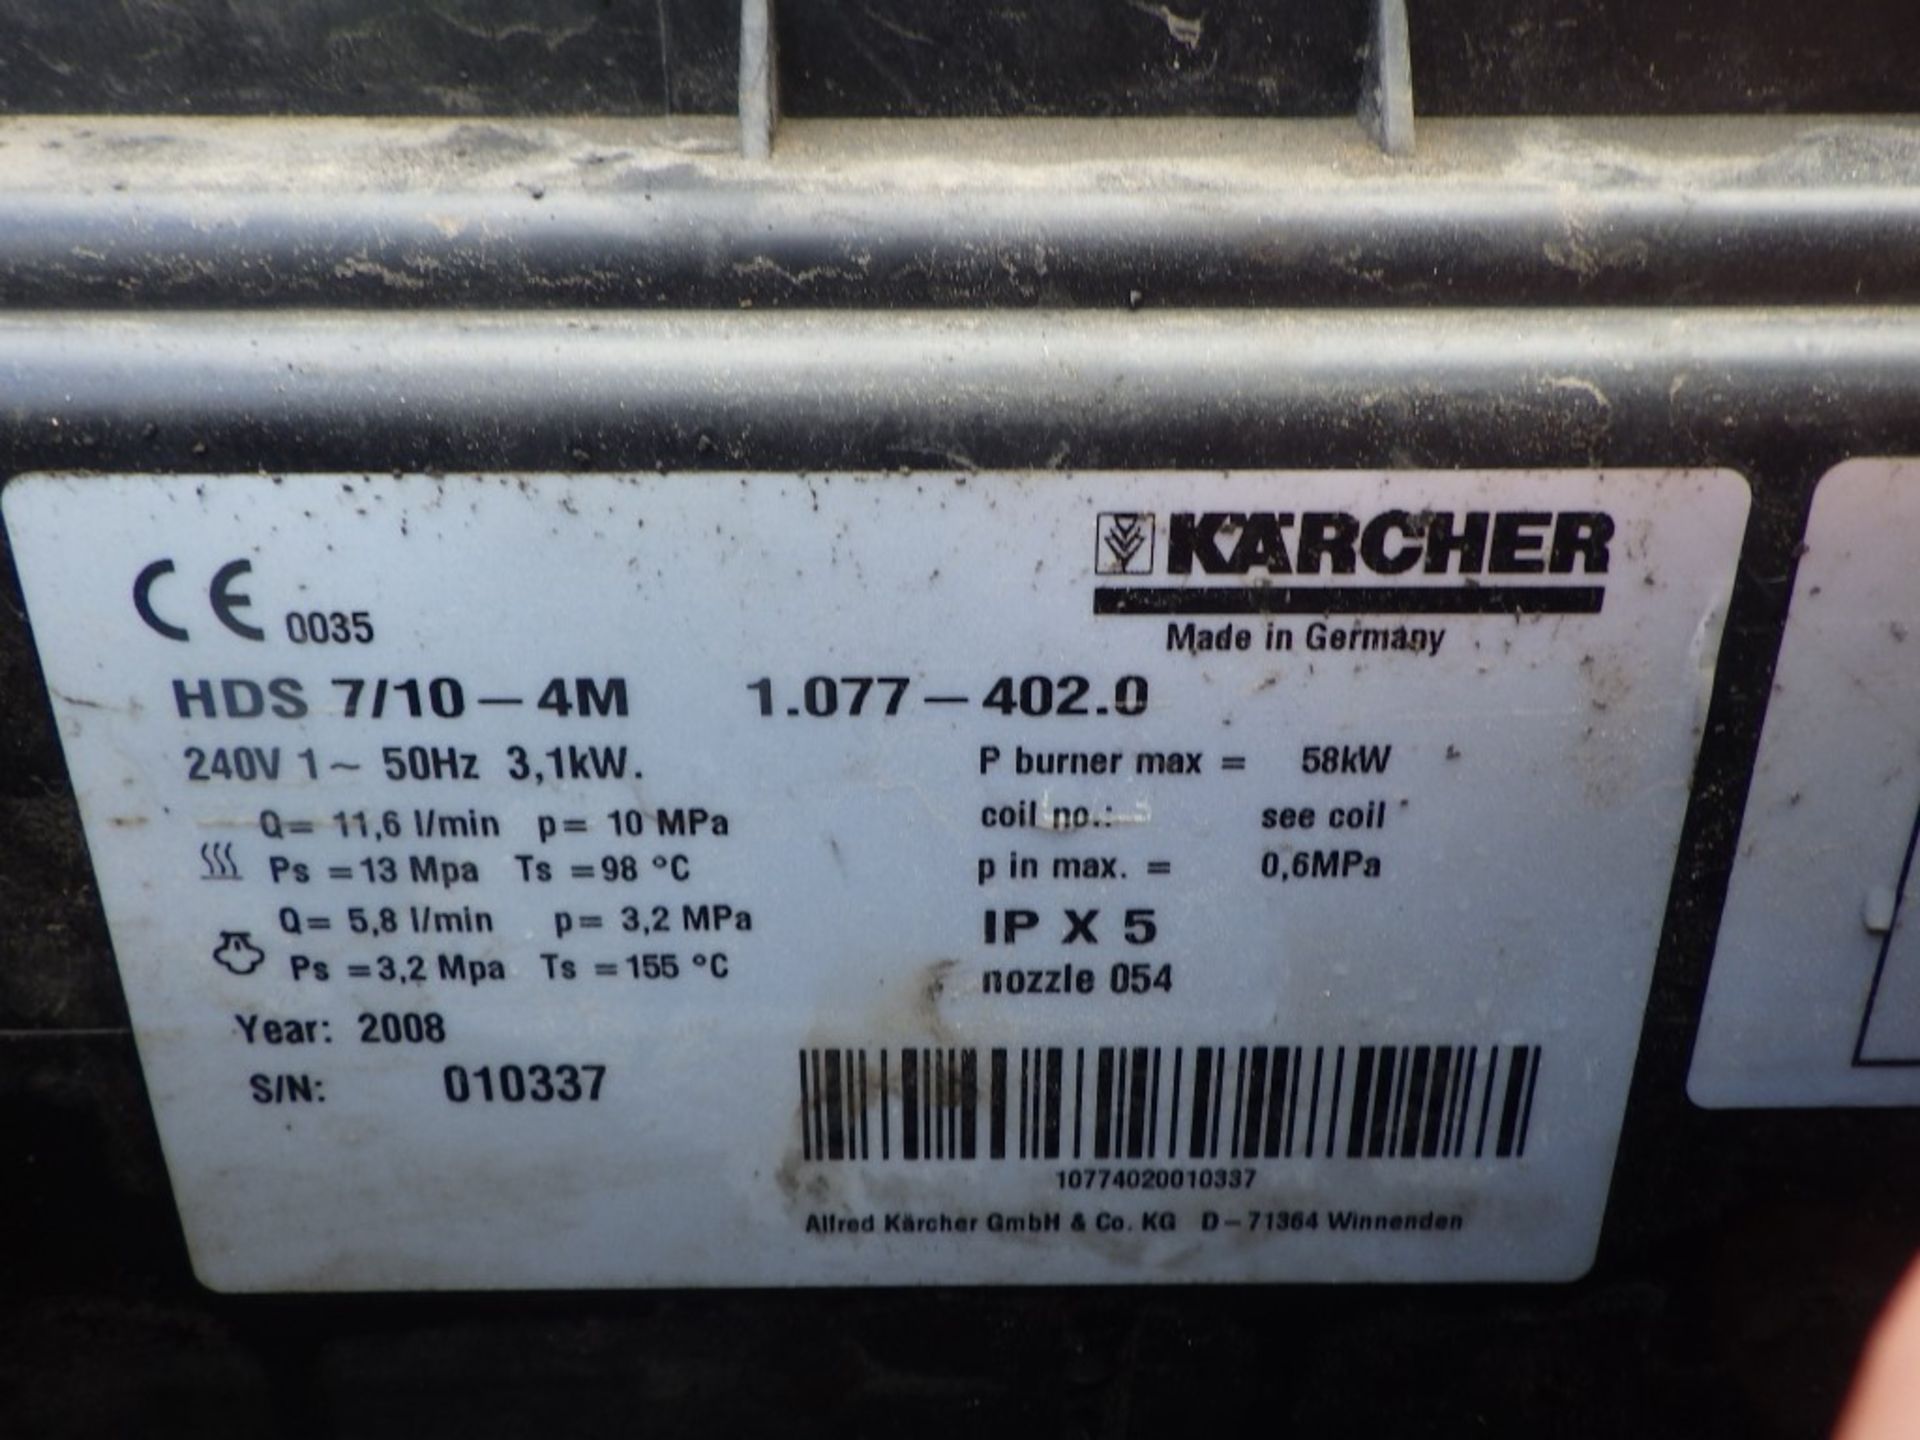 Karcher Commercial HDS 9/18 240V Steam Cleaner - Image 2 of 5